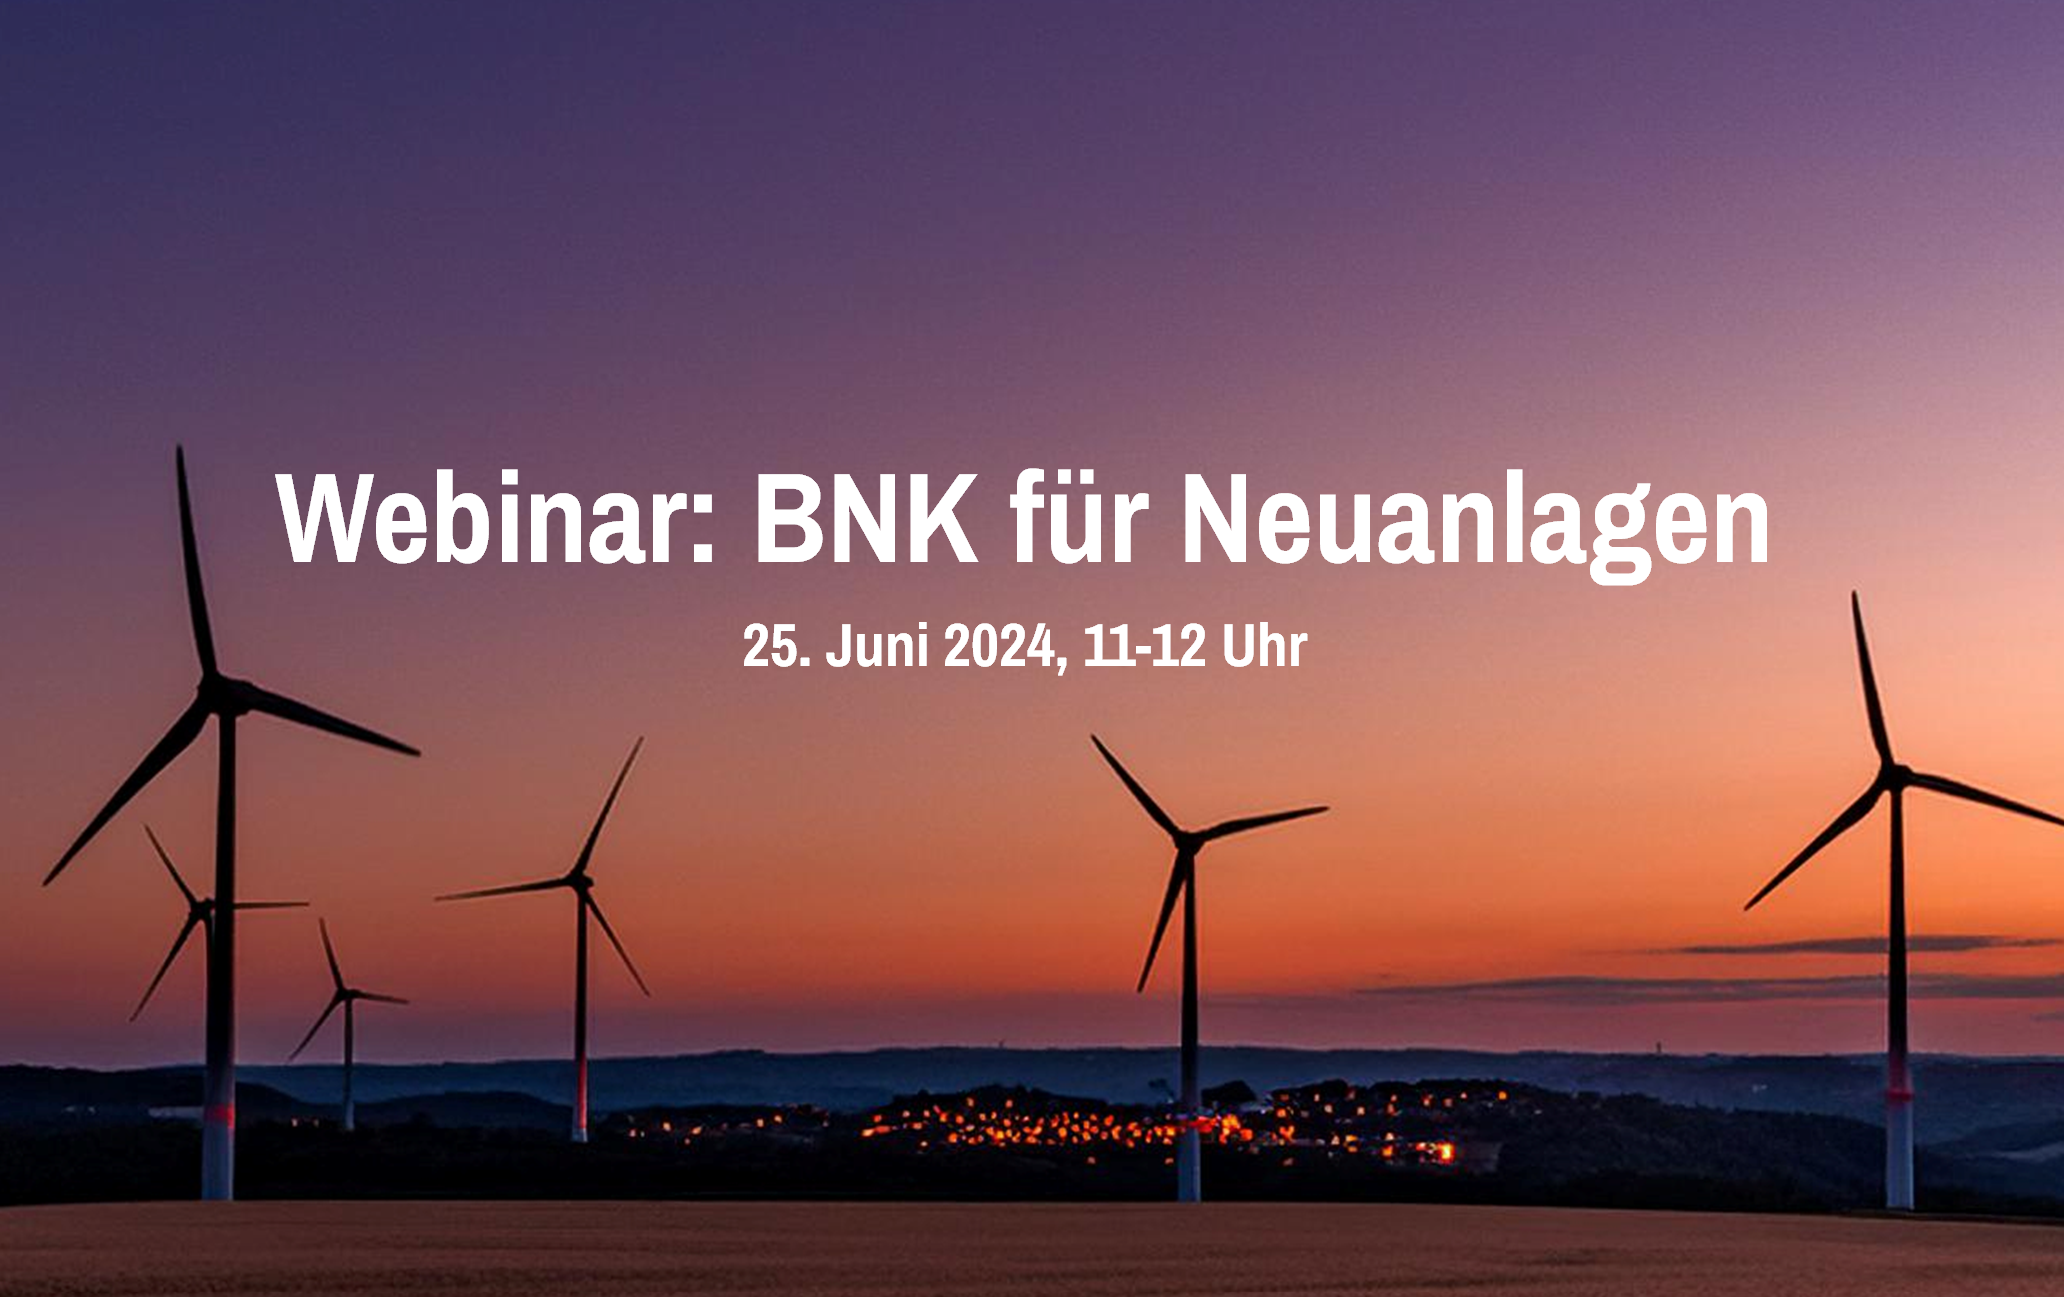 Webinar: BNK für Neuanlagen, 25. Juni 11-12 Uhr